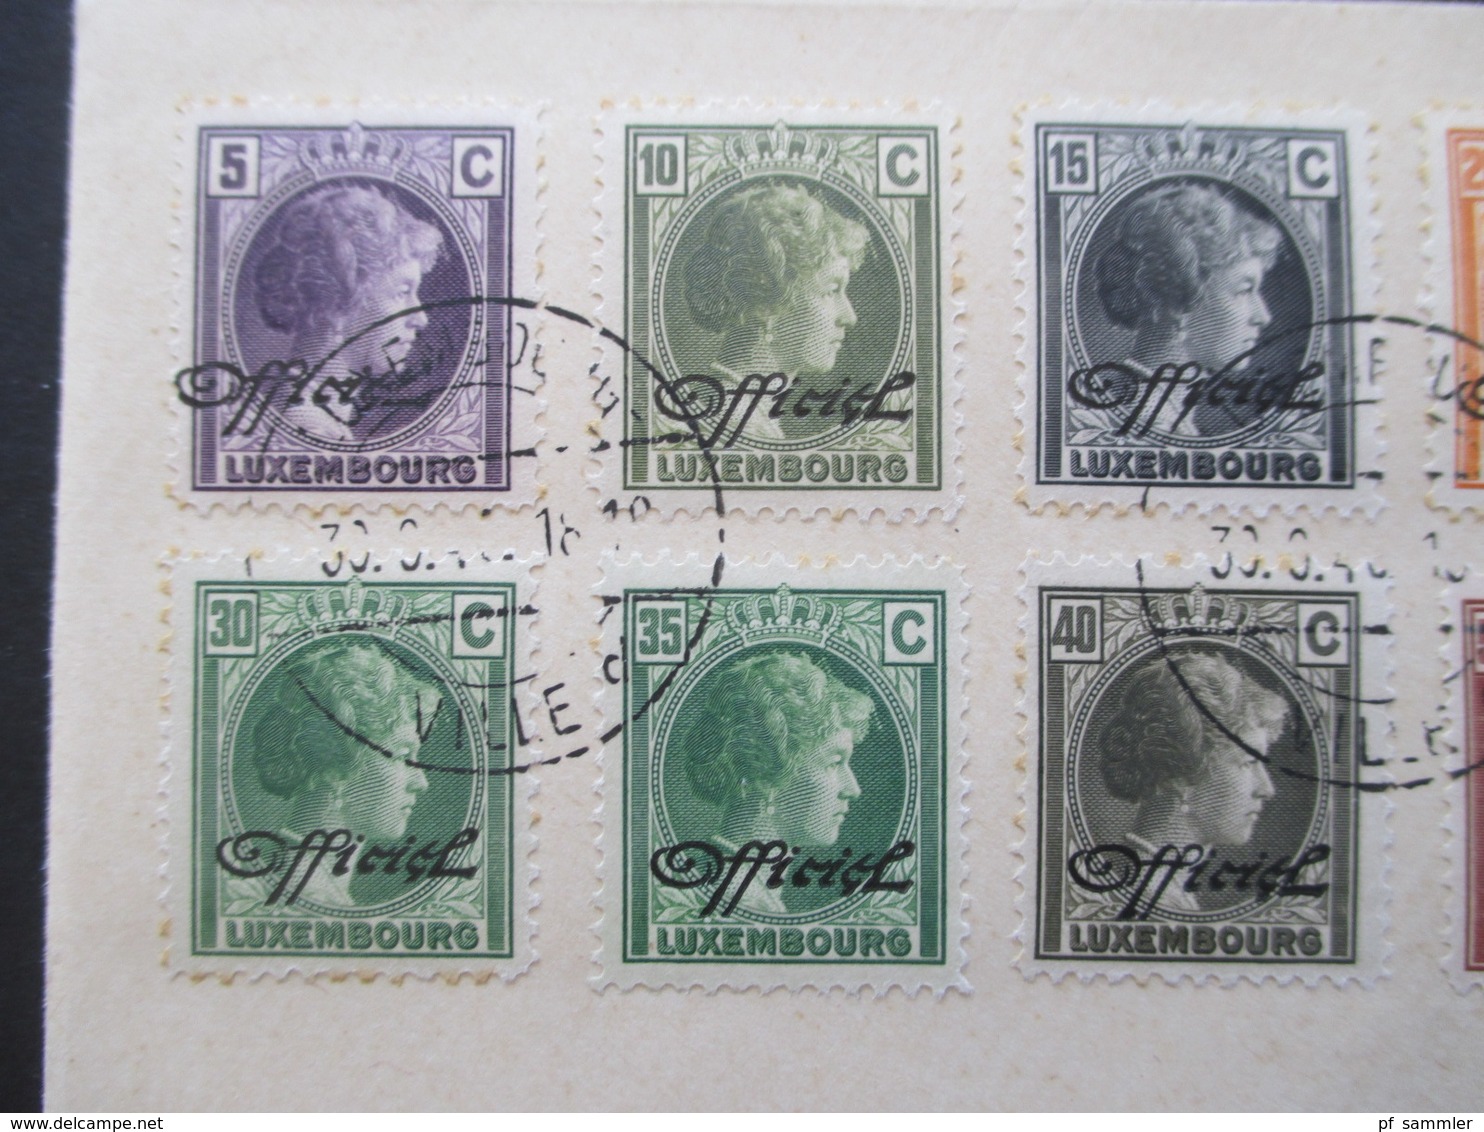 Luxemburg 1940 Dienstmarken Freimarken Mit Aufdruck Officiel 18 Werte Auf 2 Blano Umschlägen 5 Cent - 1 3/4 Fr. - Service